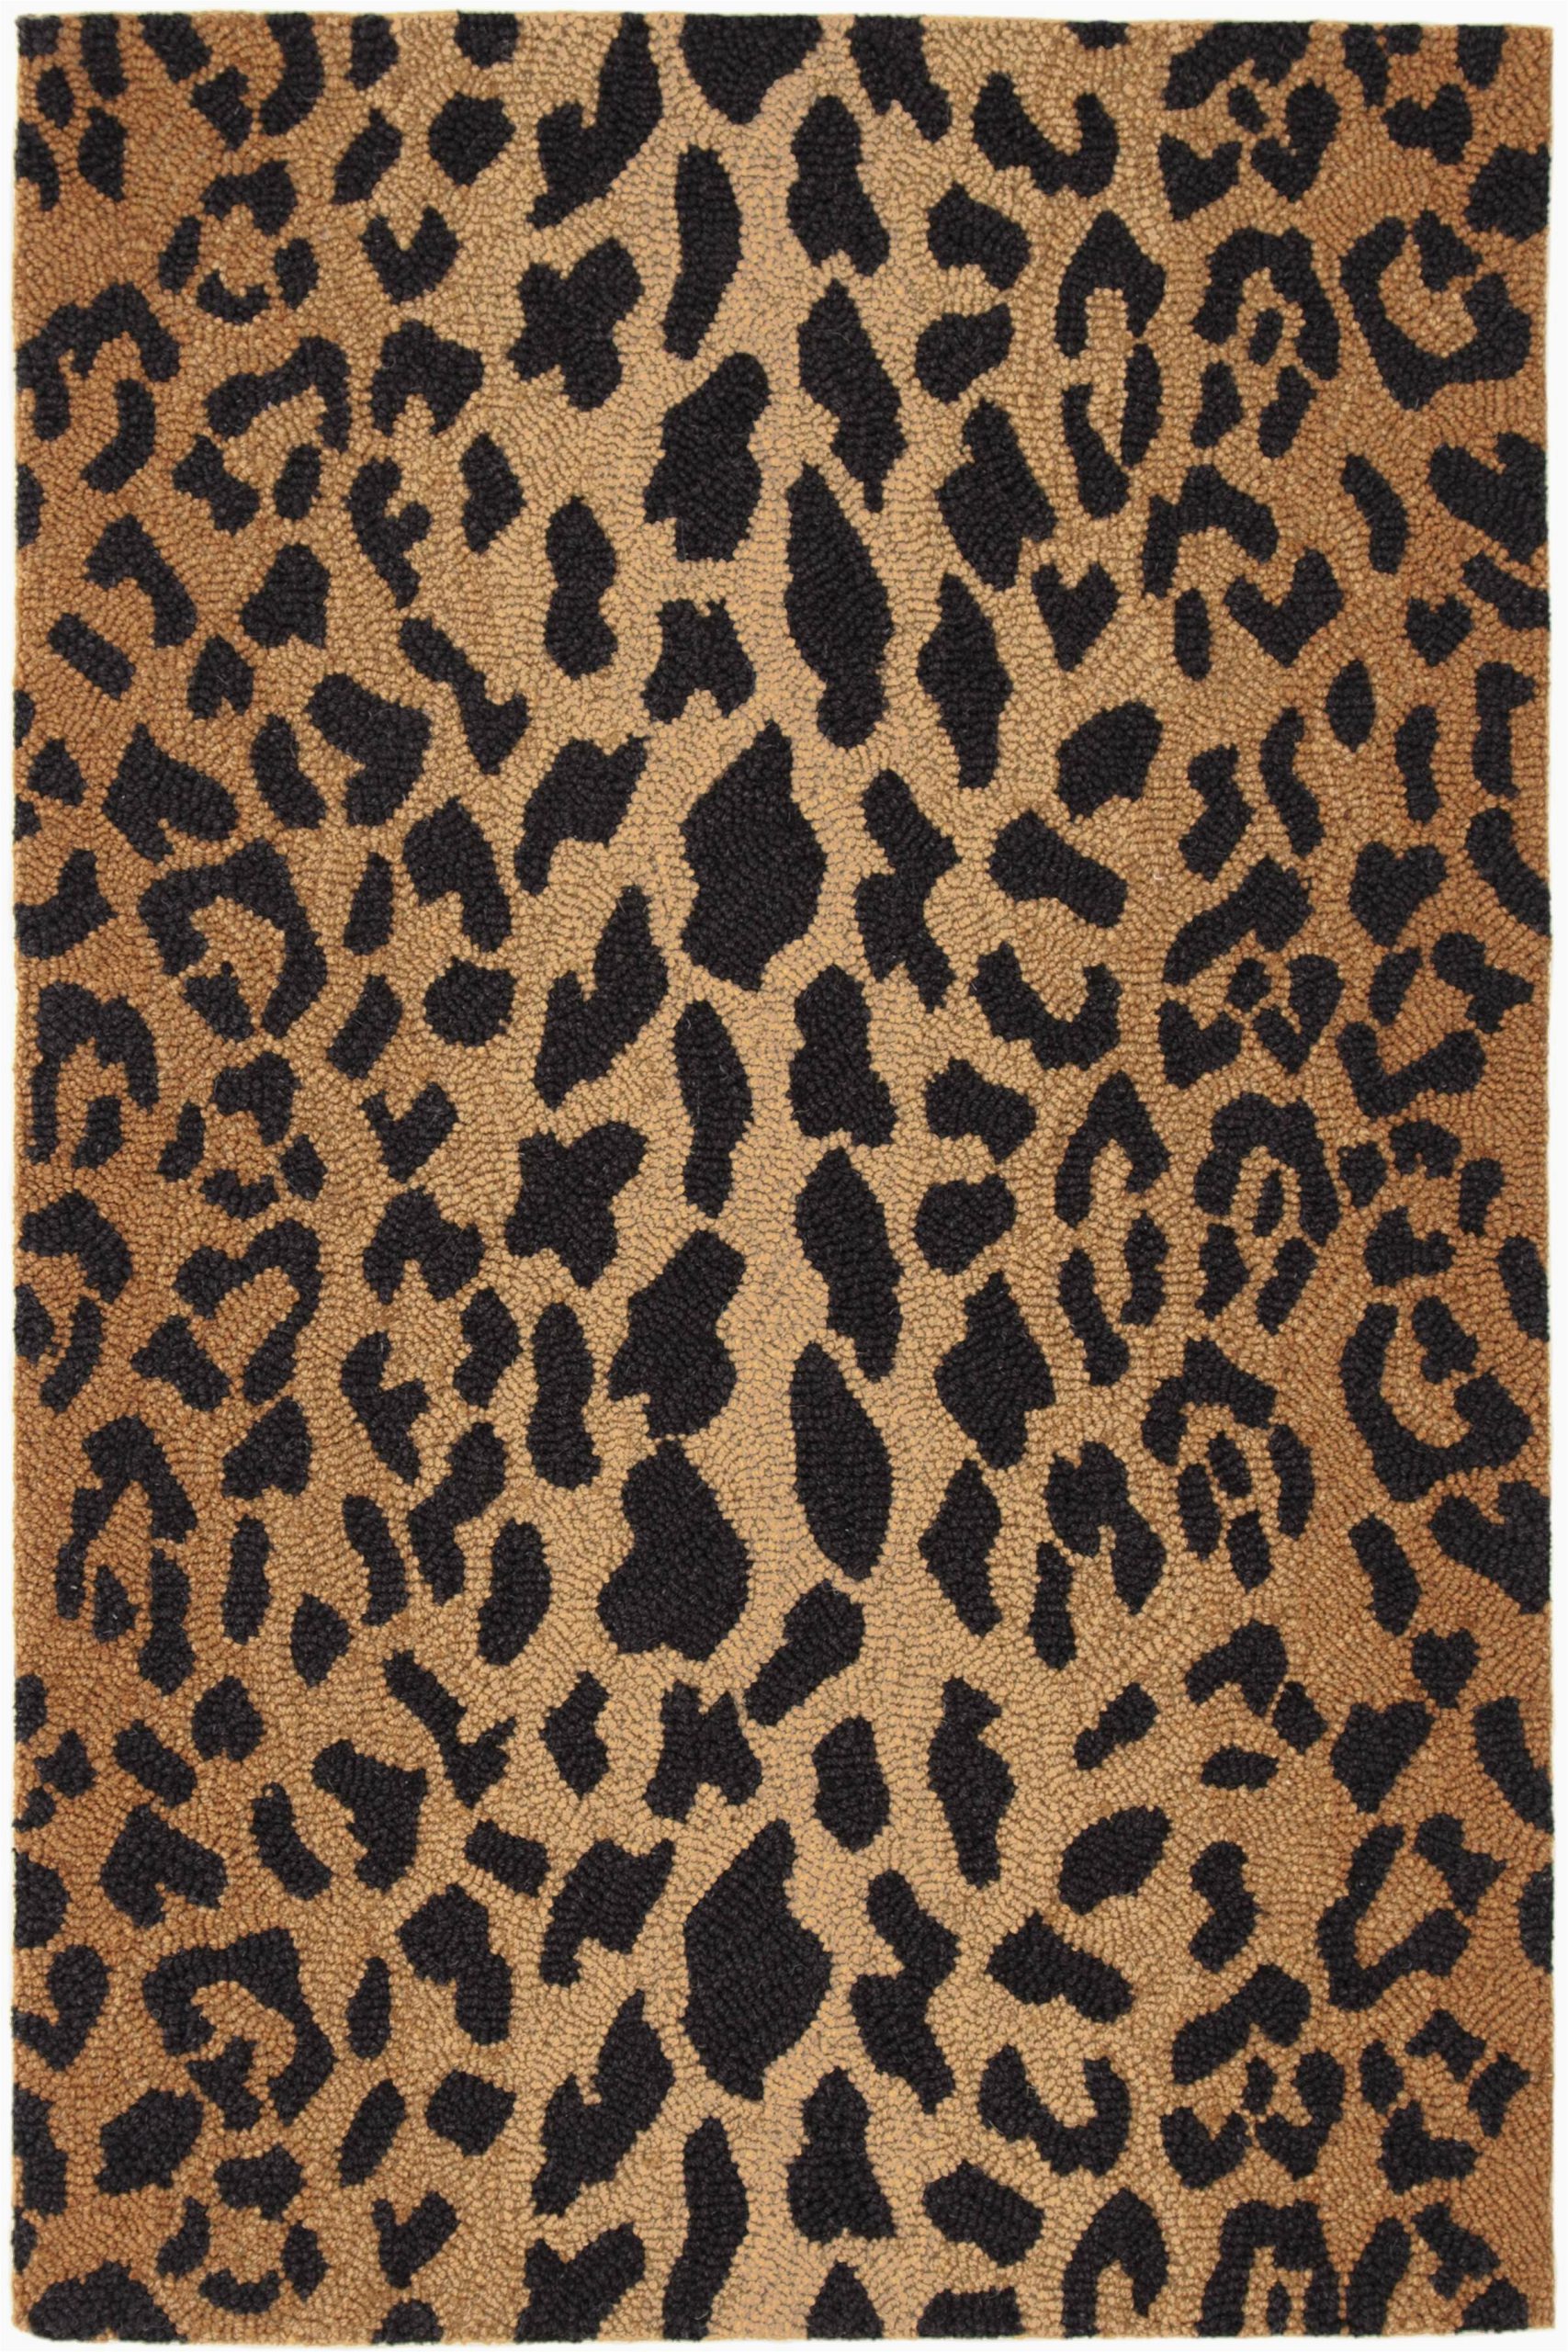 leopard animal print hand hooked wool brownblack area rug